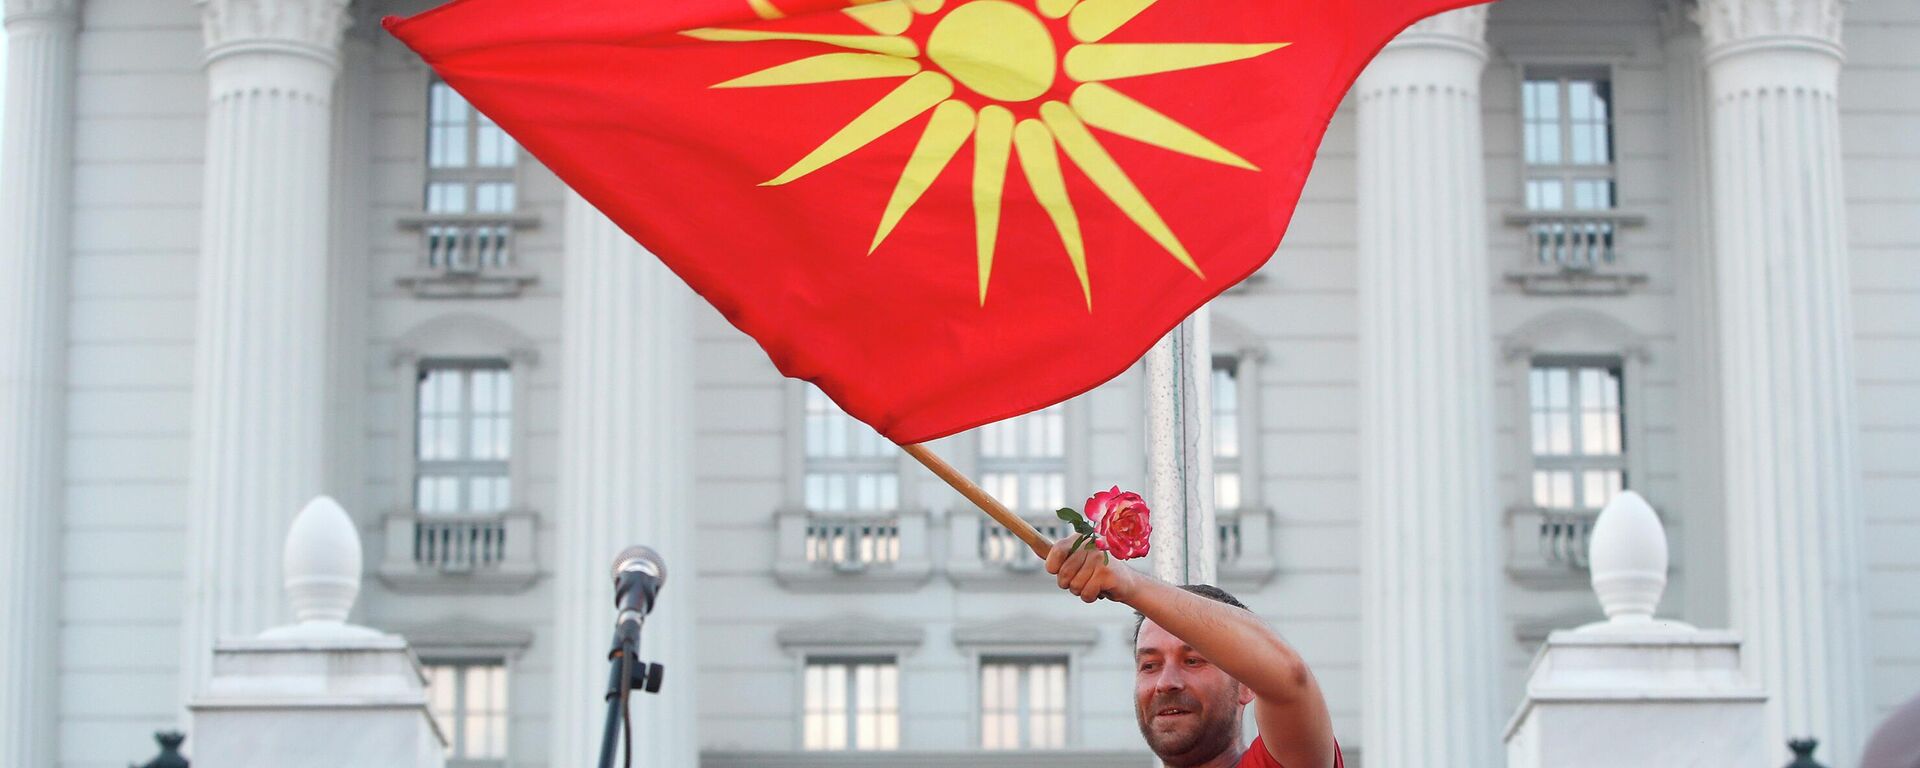 Demonstrant sa starom nacionalnom zastavom na antivladinom protestu u Skoplju - Sputnik Srbija, 1920, 13.07.2022